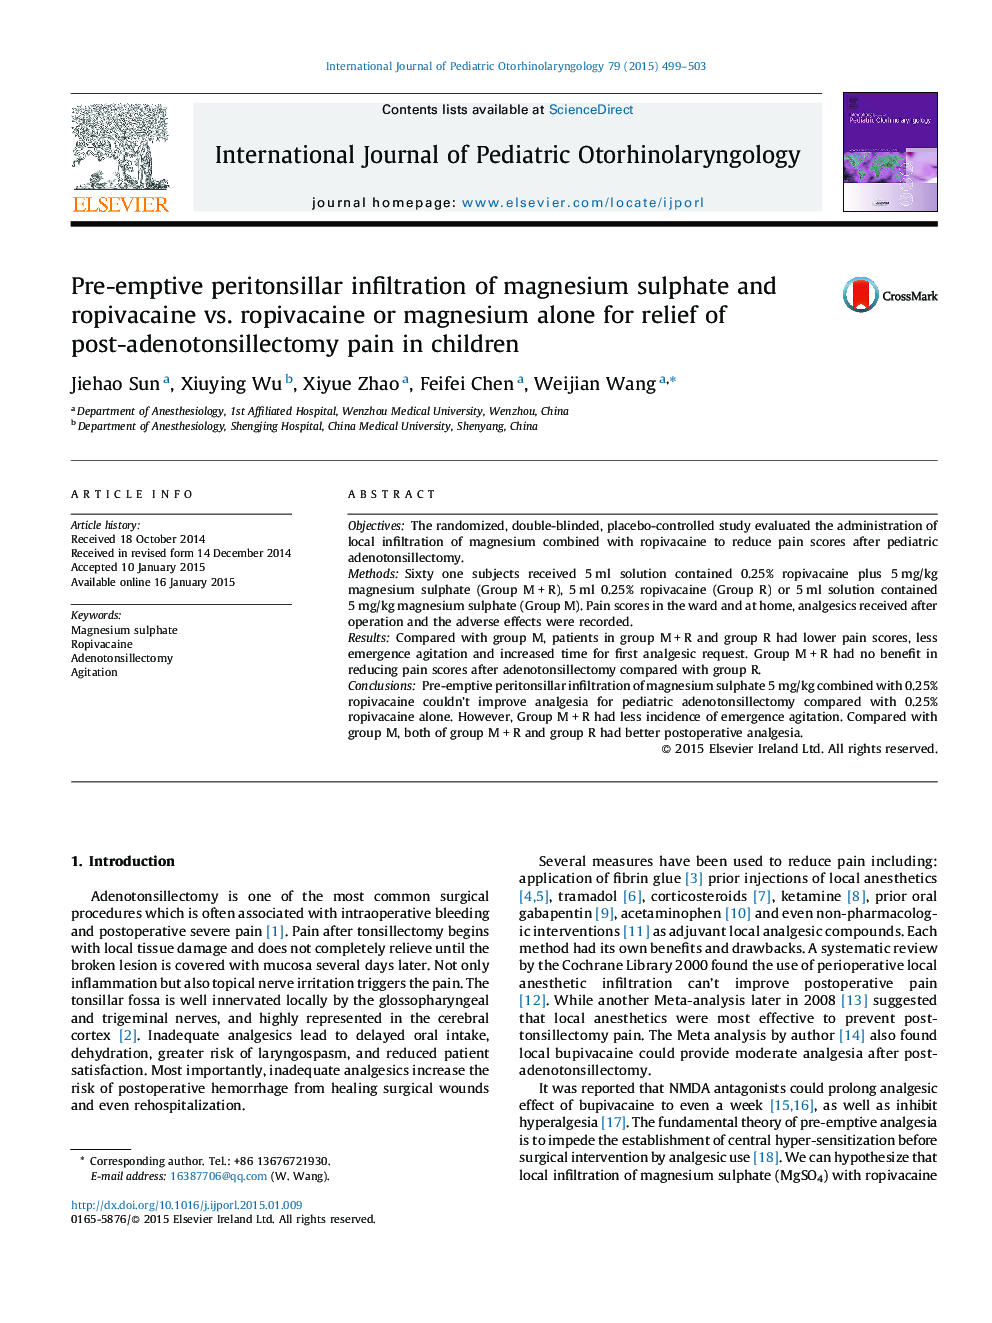 نفوذ پریتونسیریل پیشگیرانه سولفات منیزیم و روپیفوواکائین در برابر روپیفوواکائین یا منیزیم به تنهایی برای تسکین درد پس از آدنوتونسیلکتومی در کودکان 